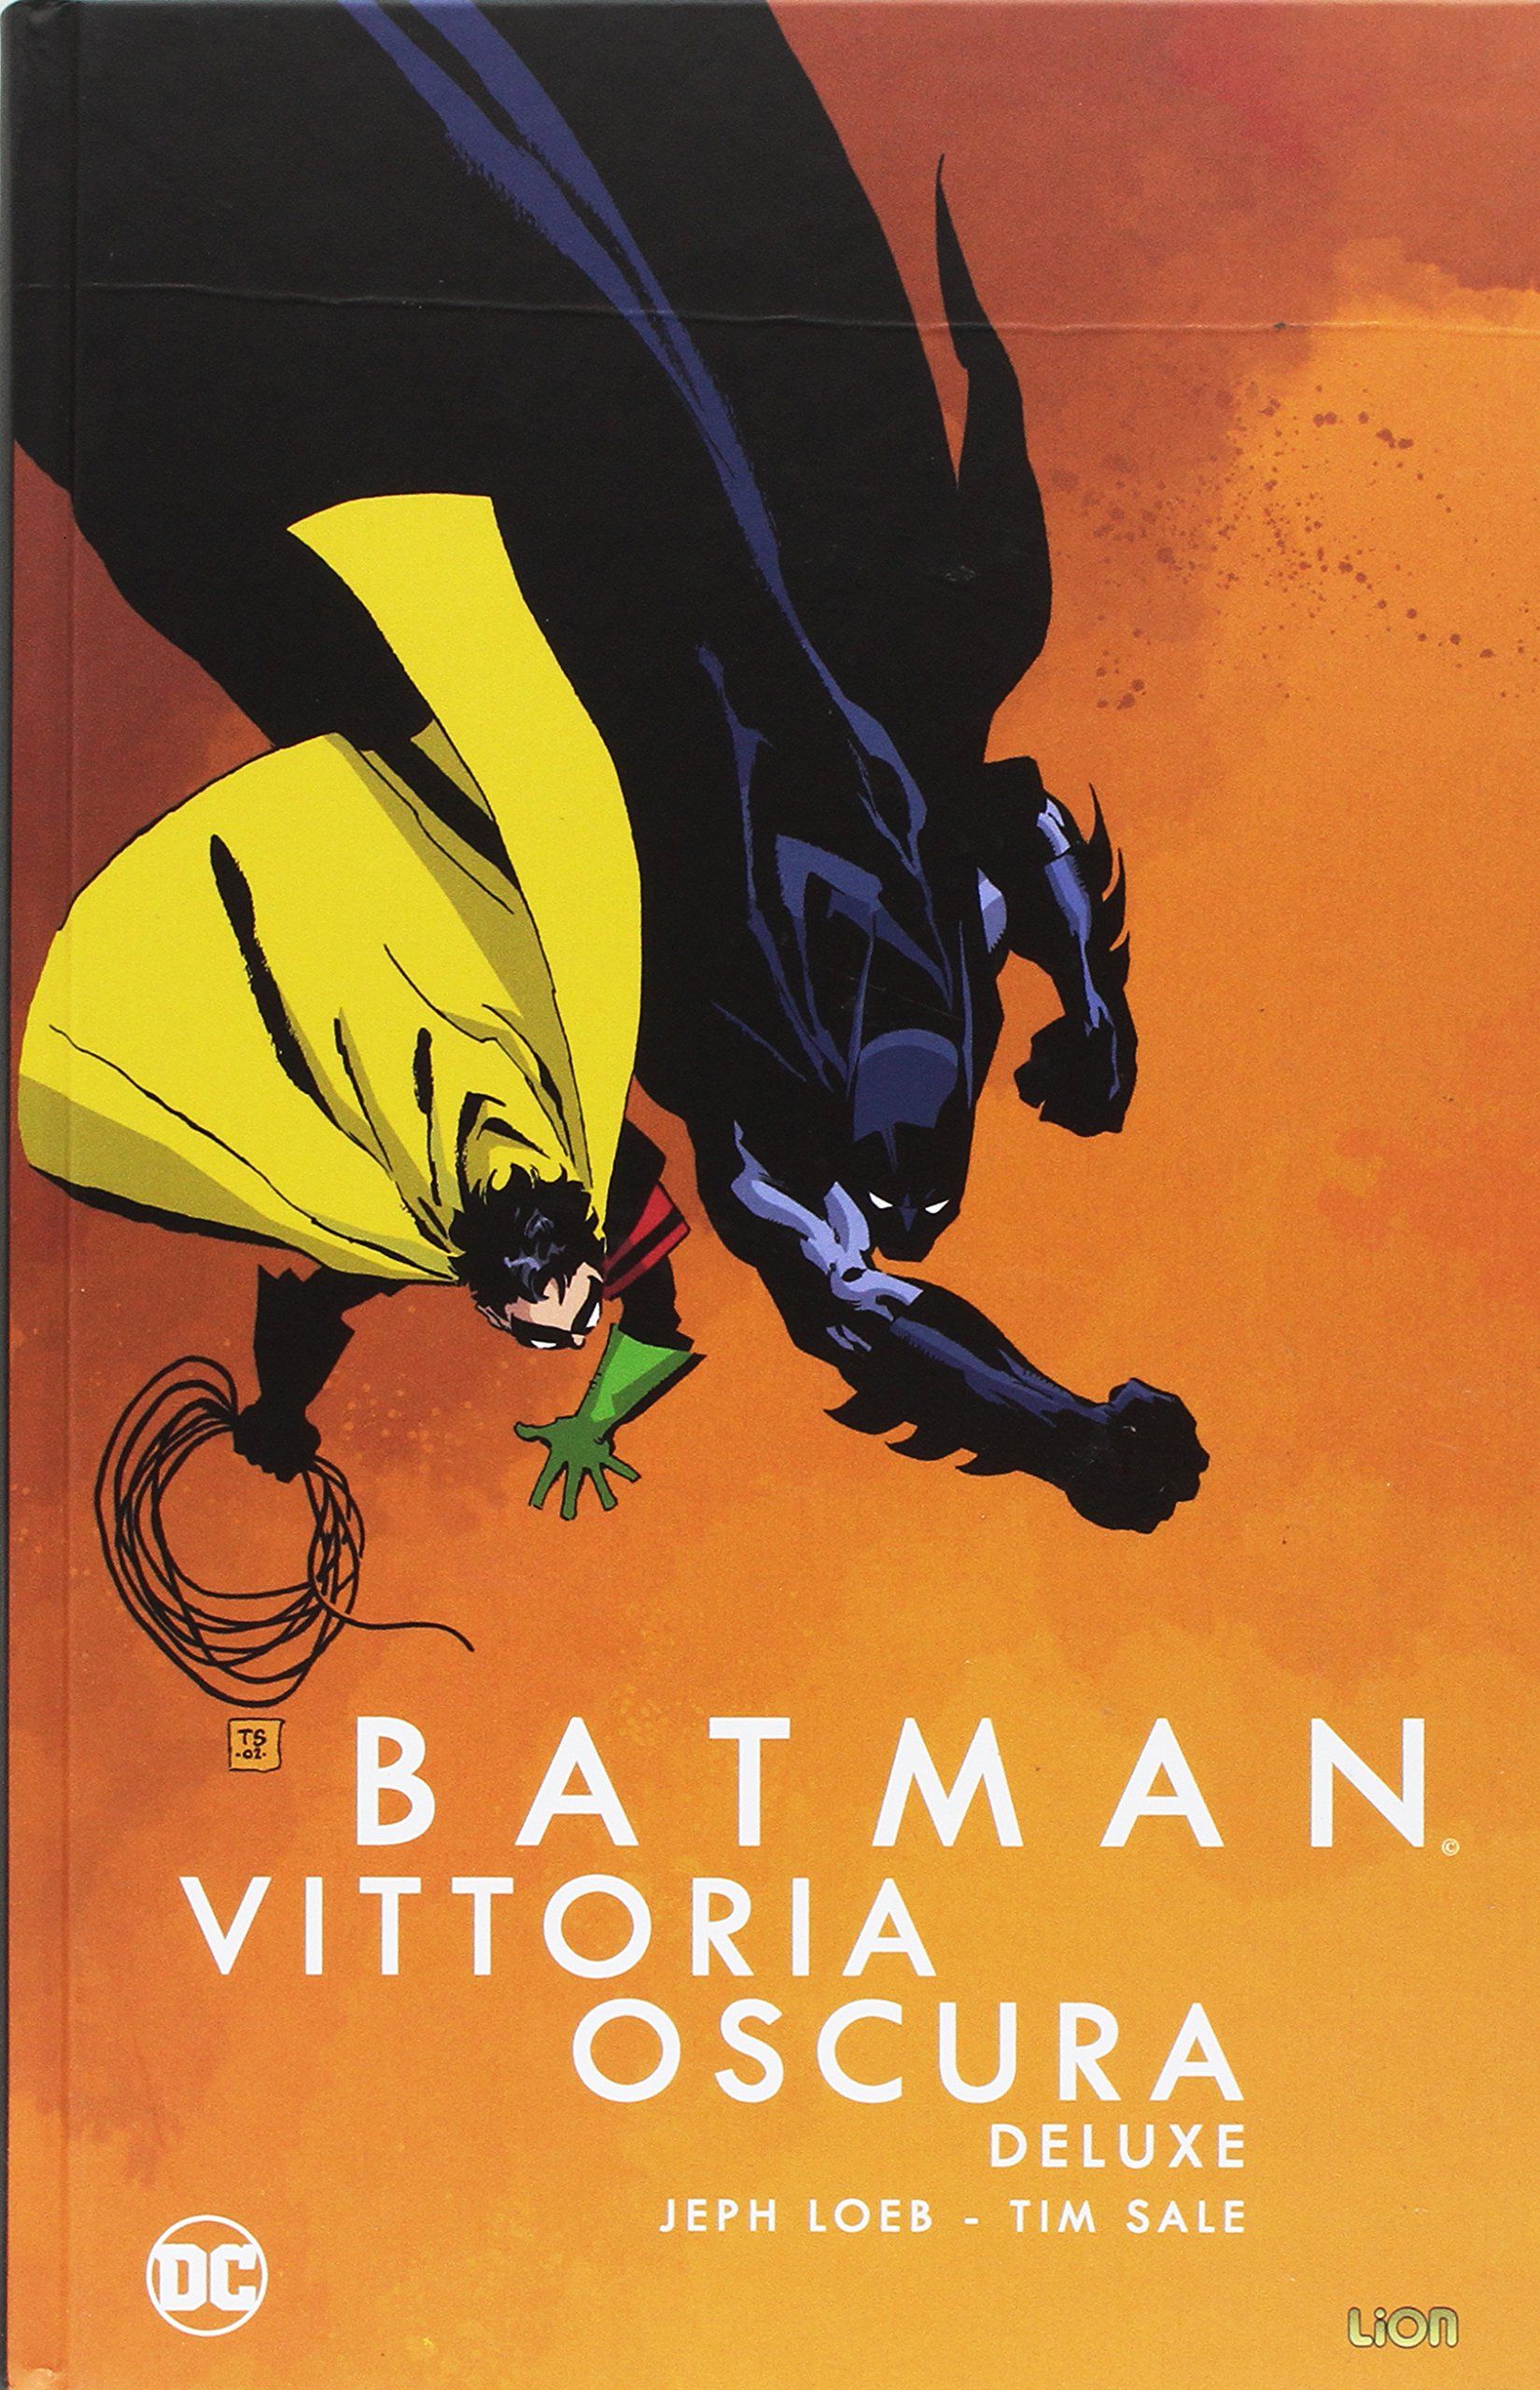 Batman compie 80 anni: 8 storie da leggere assolutamente